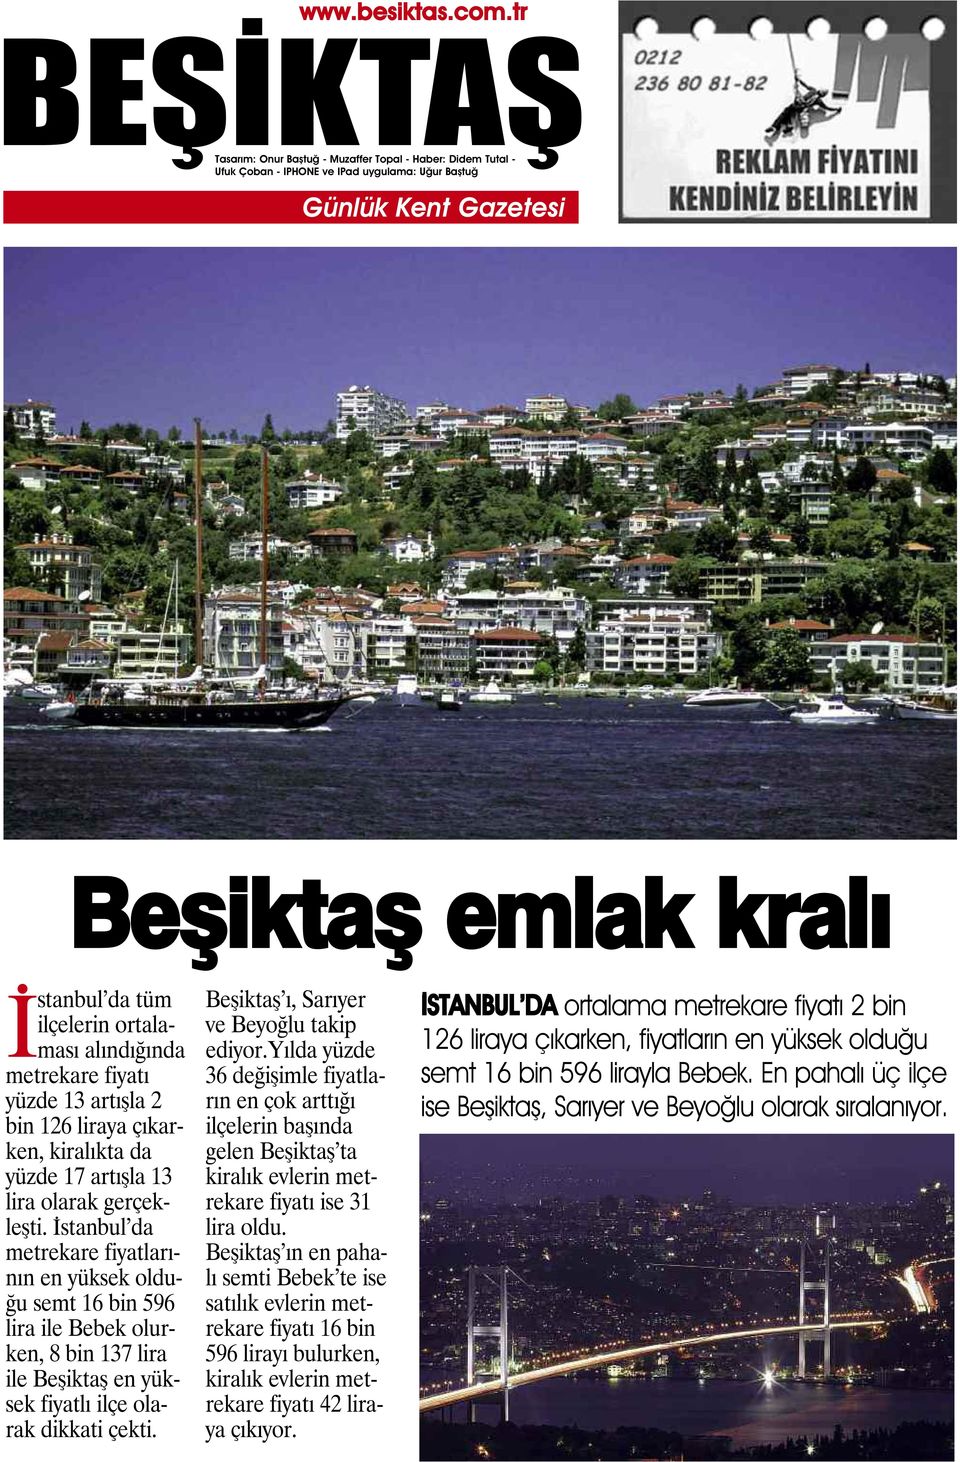 Beşiktaş ı, Sarıyer ve Beyoğlu takip ediyor.yılda yüzde 36 değişimle fiyatların en çok arttığı ilçelerin başında gelen Beşiktaş ta kiralık evlerin metrekare fiyatı ise 31 lira oldu.